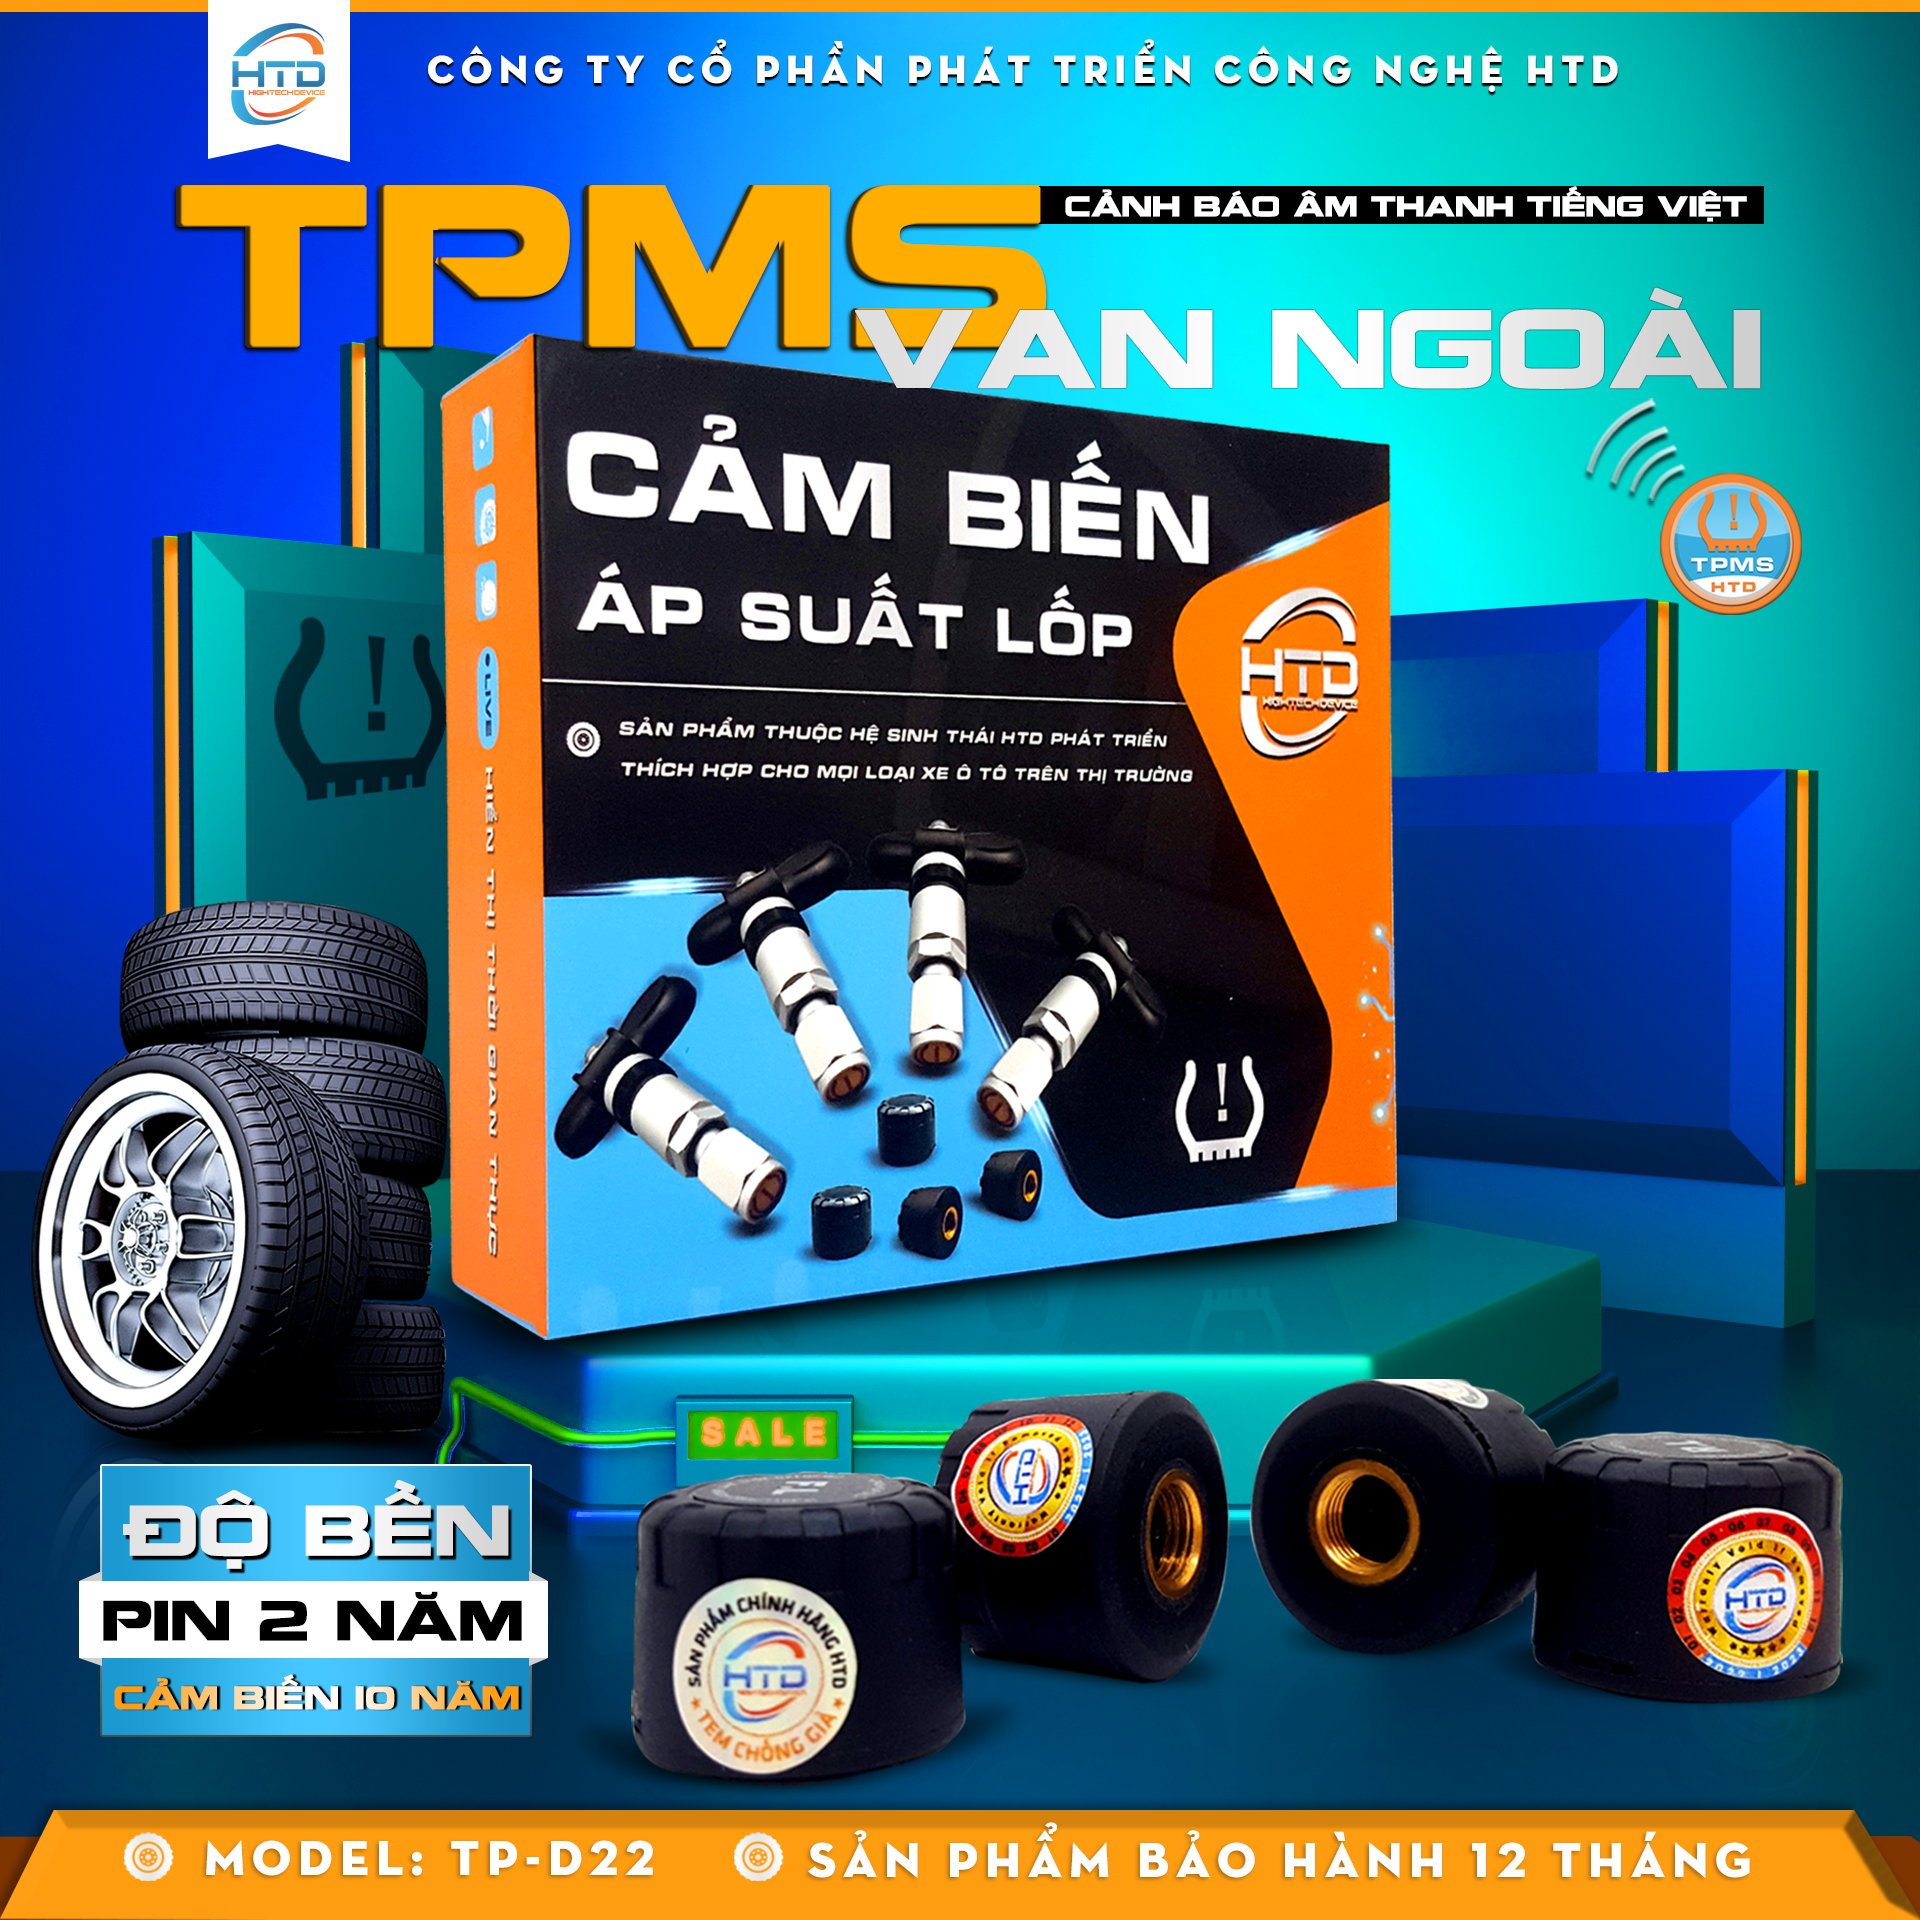 Cảm biến áp suất lốp HTD BLE 5.0 TPMS TP-D22 dành cho ô tô - Hàng chính hãng